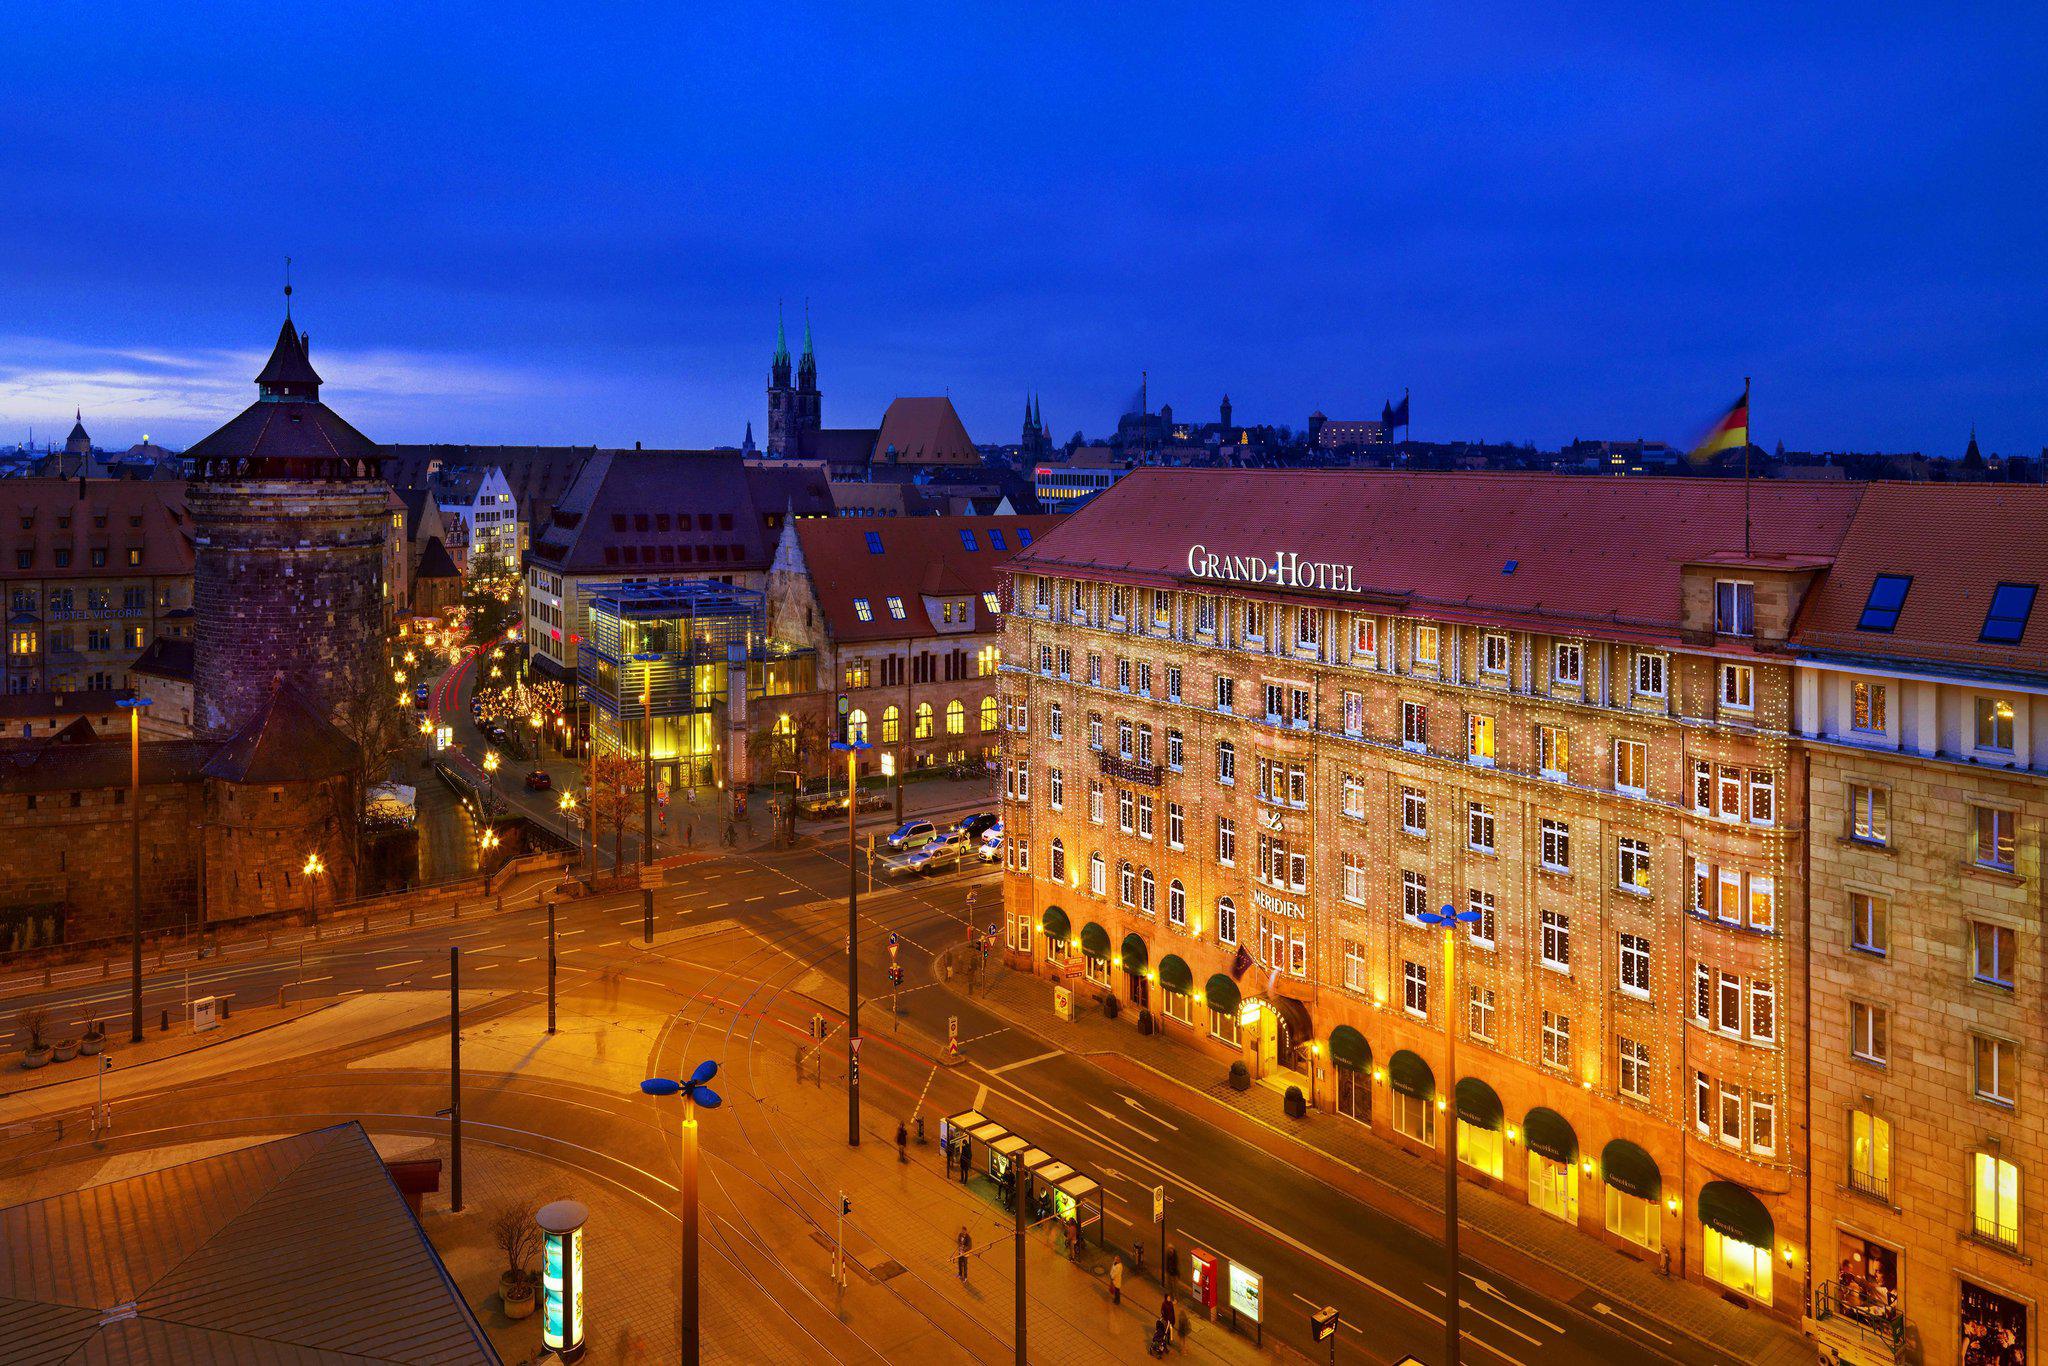 Le Méridien Grand Hotel Nuremberg, Bahnhofstrasse 1-3 in Nuremberg